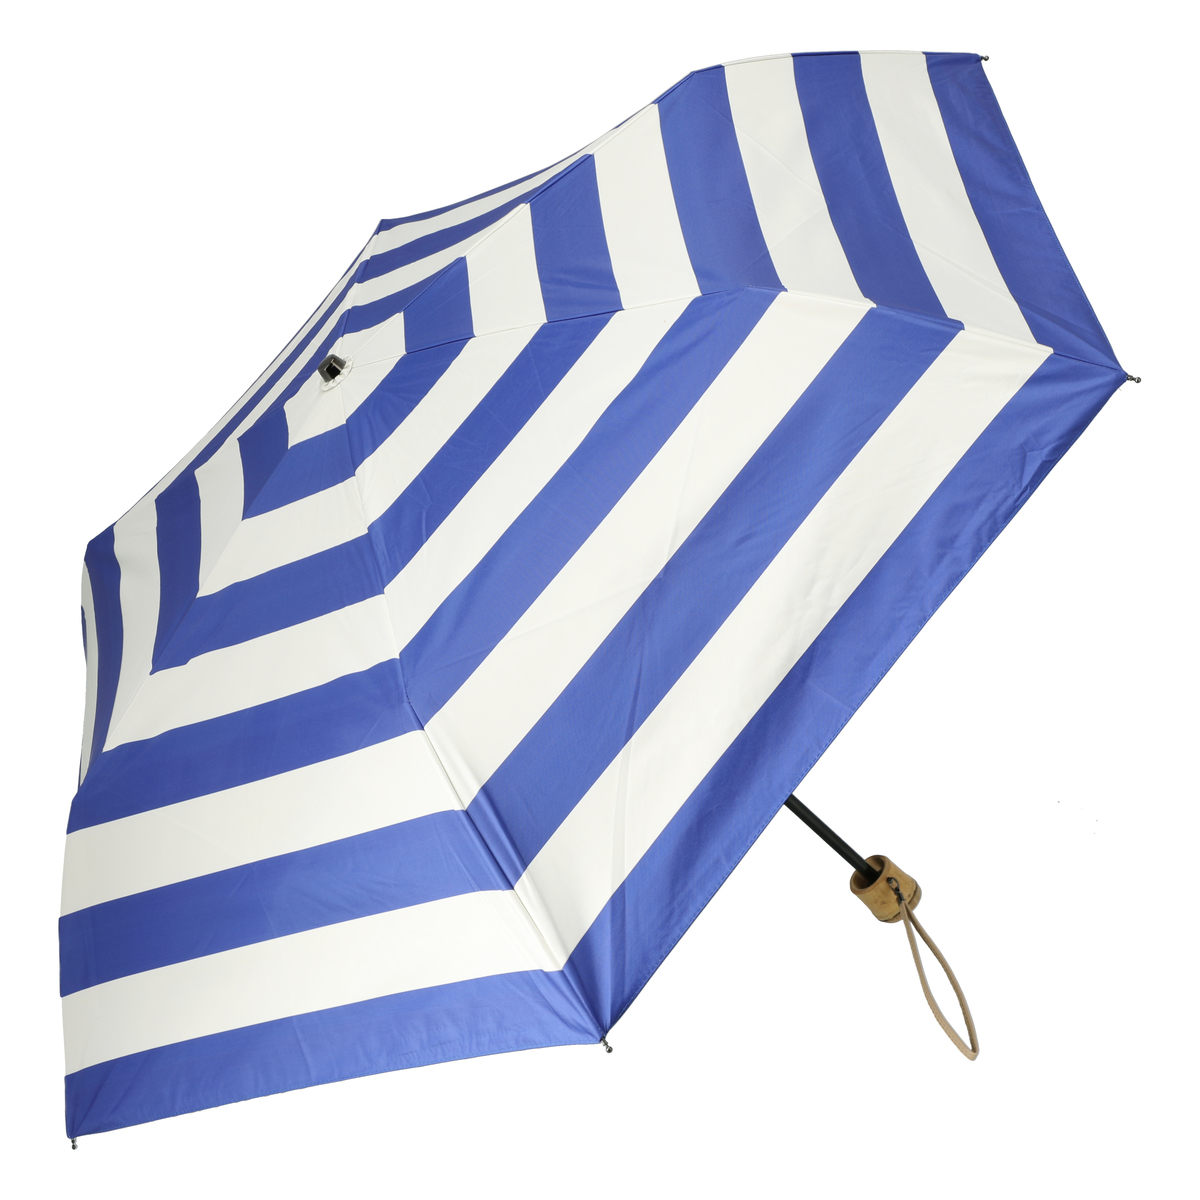  ルナジュメール UV+1級遮光 竹手元ブルーマルチ柄折傘  マリンボーダー